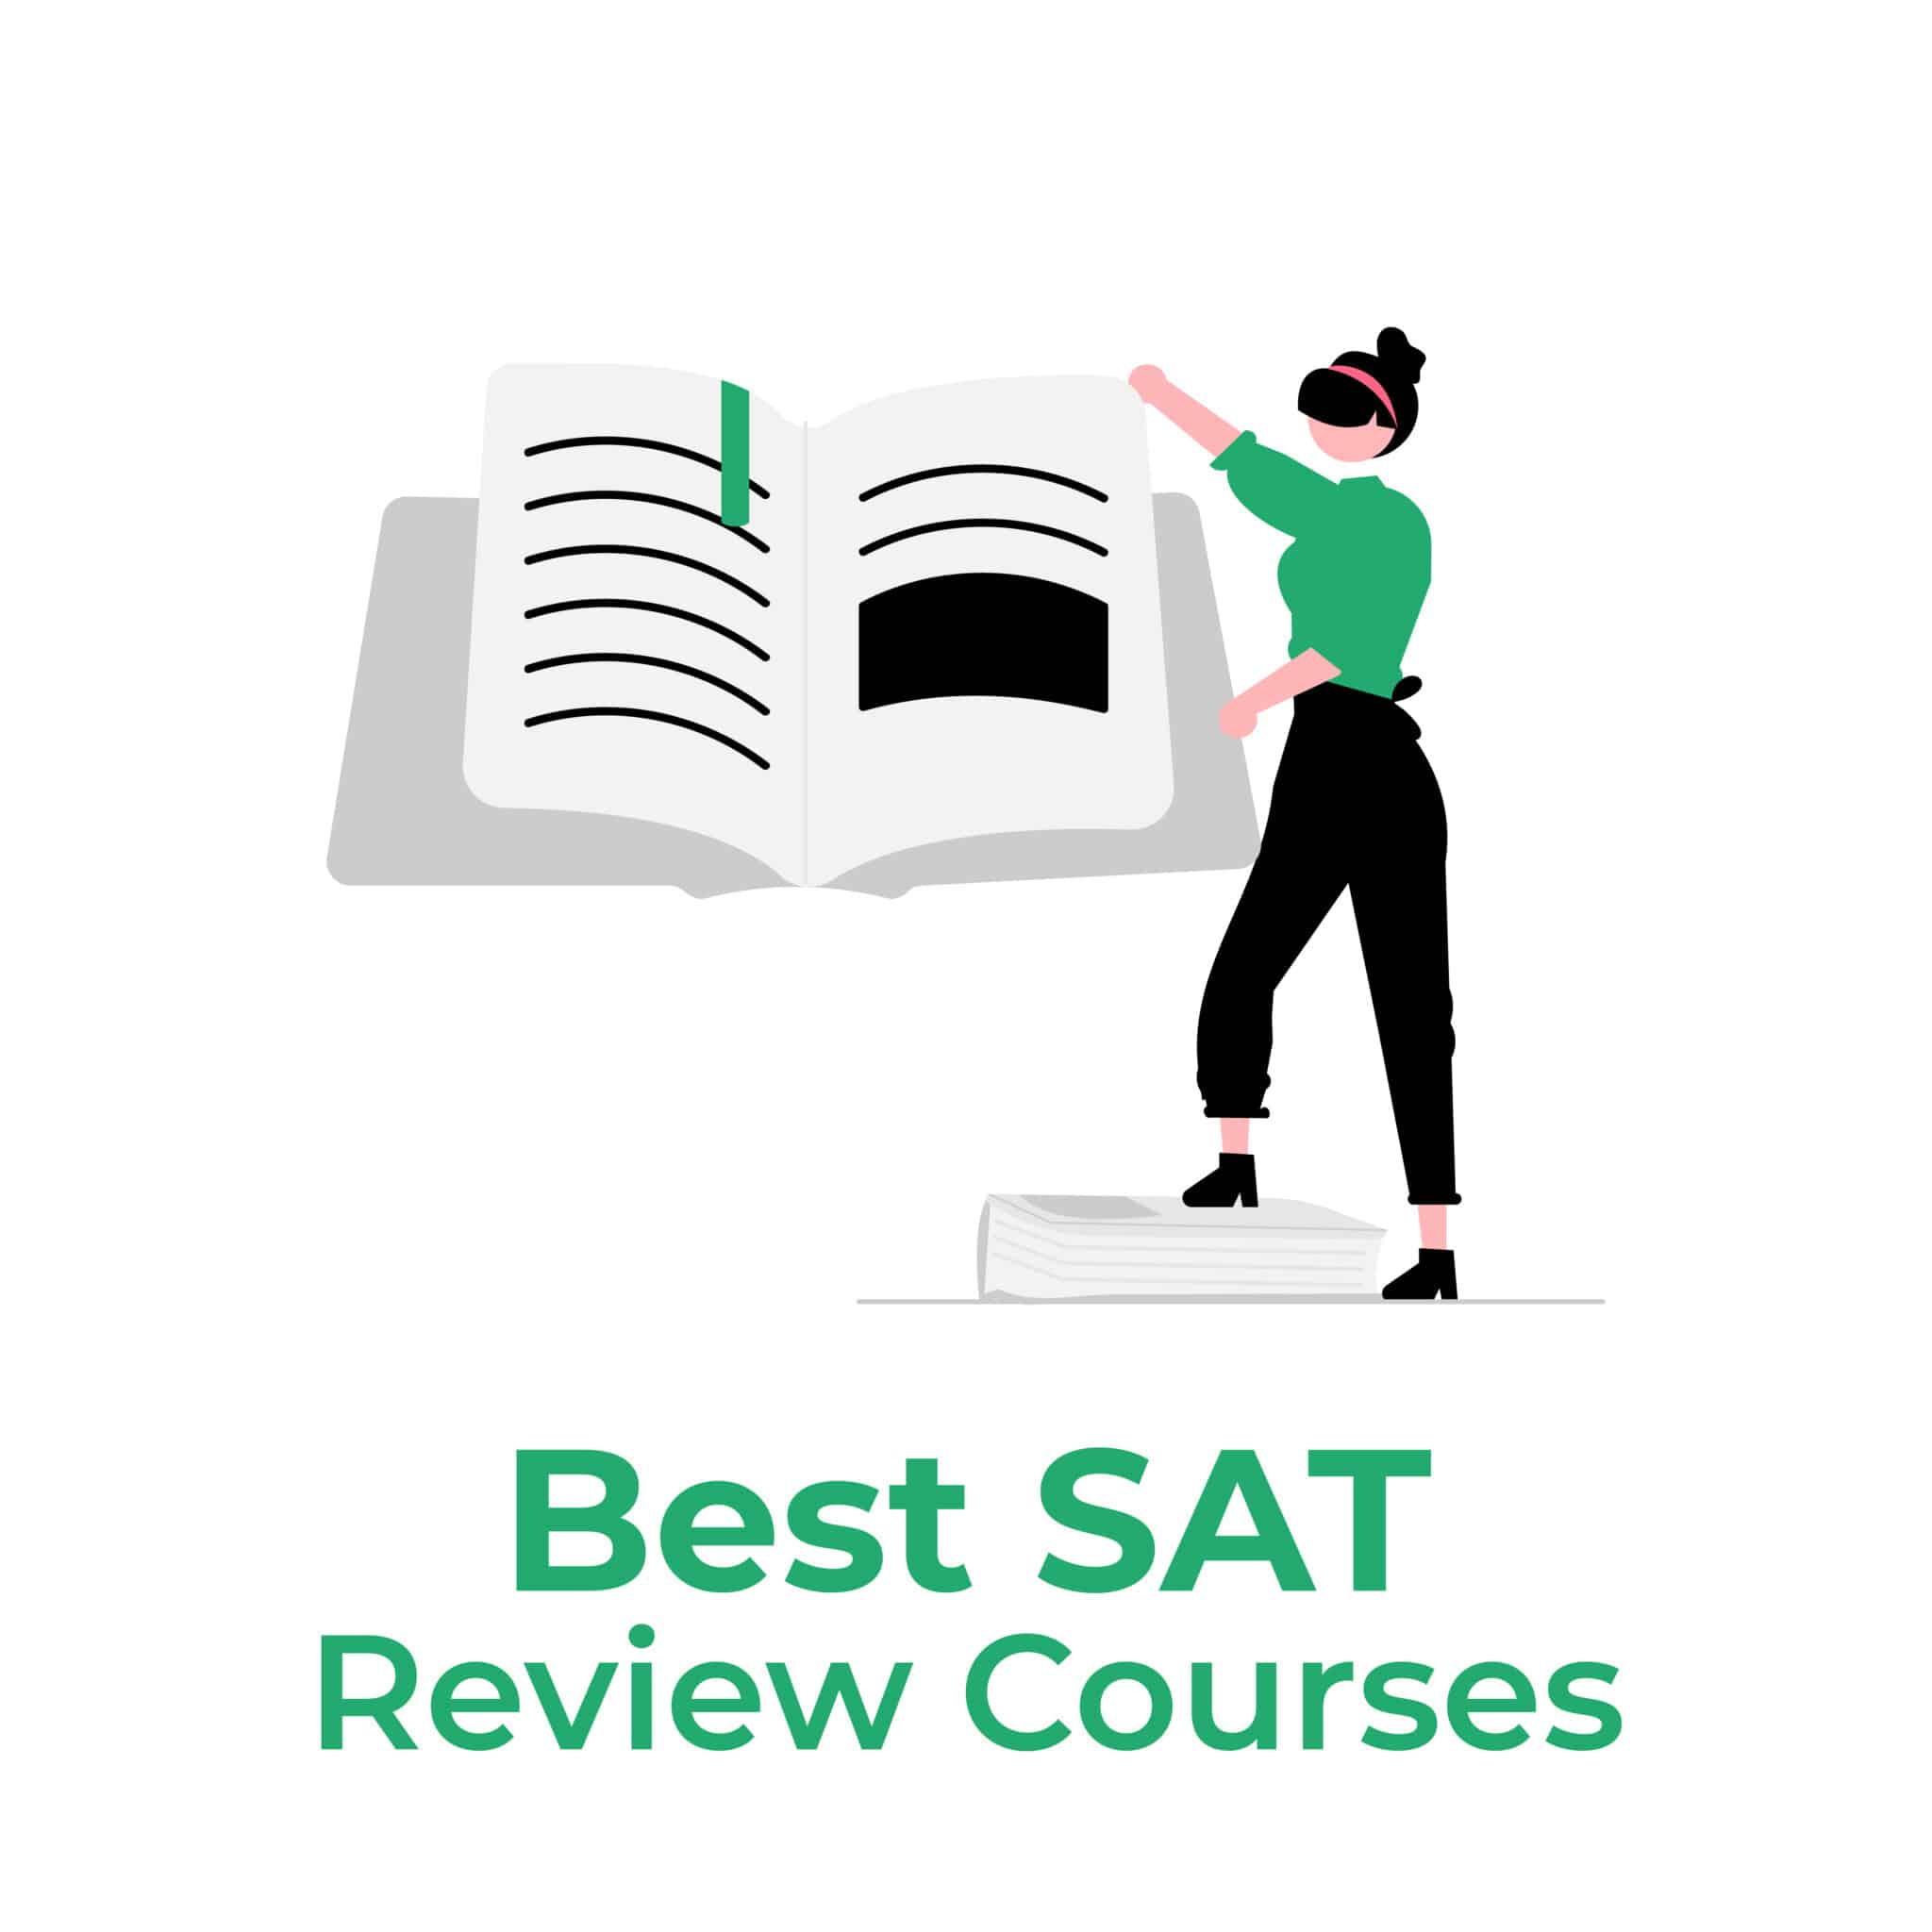 Best SAT Review Courses